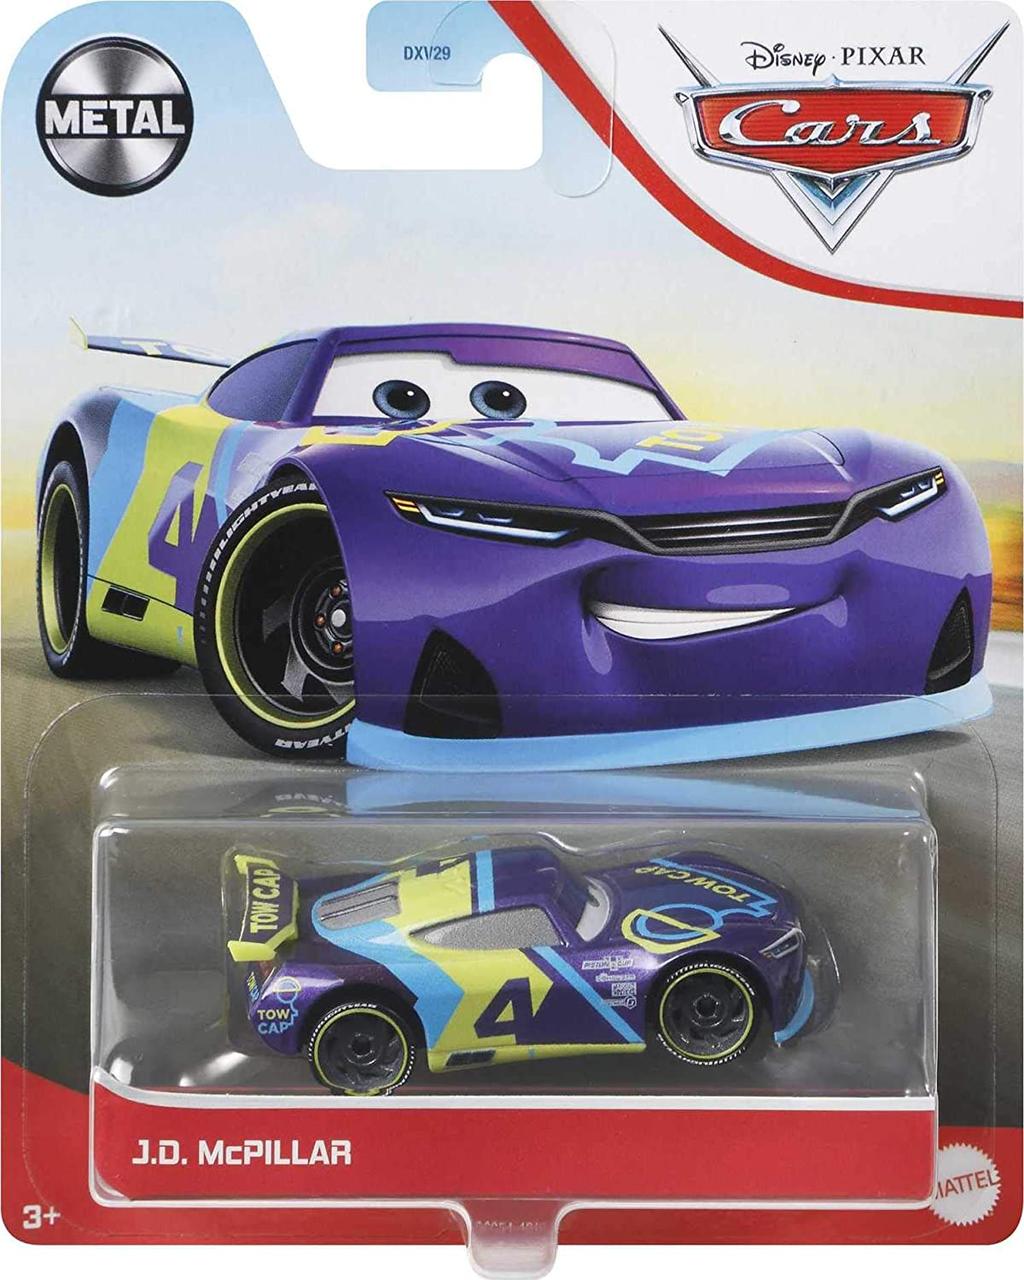 Тачки 3: Д. Ж. МакПиллар (Disney and Pixar Cars J. d. Mcpillar) від Mattel